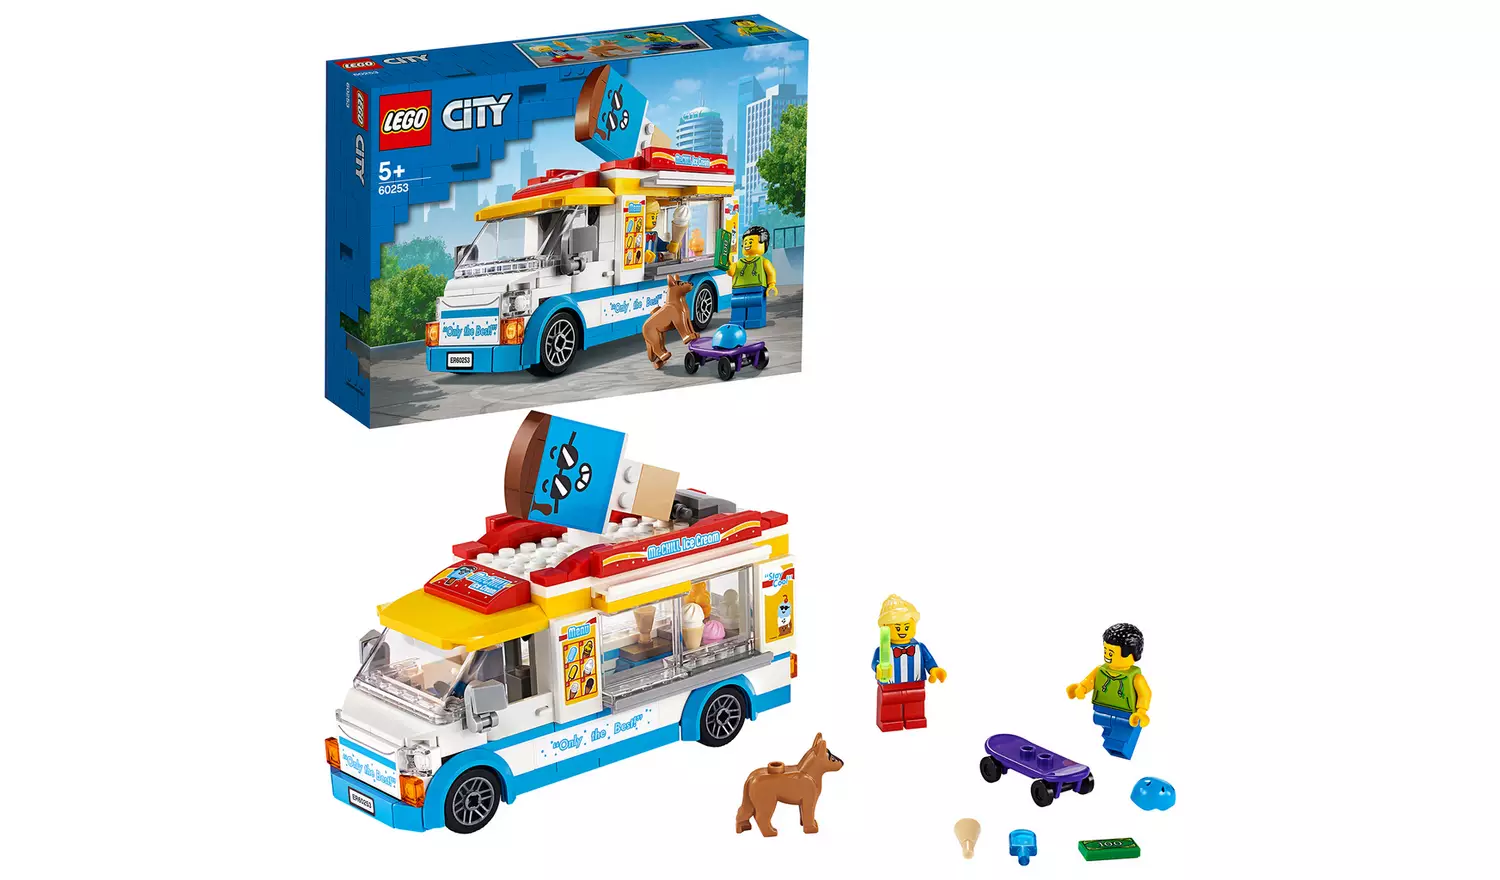 LEGO City Great Vehicles Ice Cream Van Truck Toy 60253